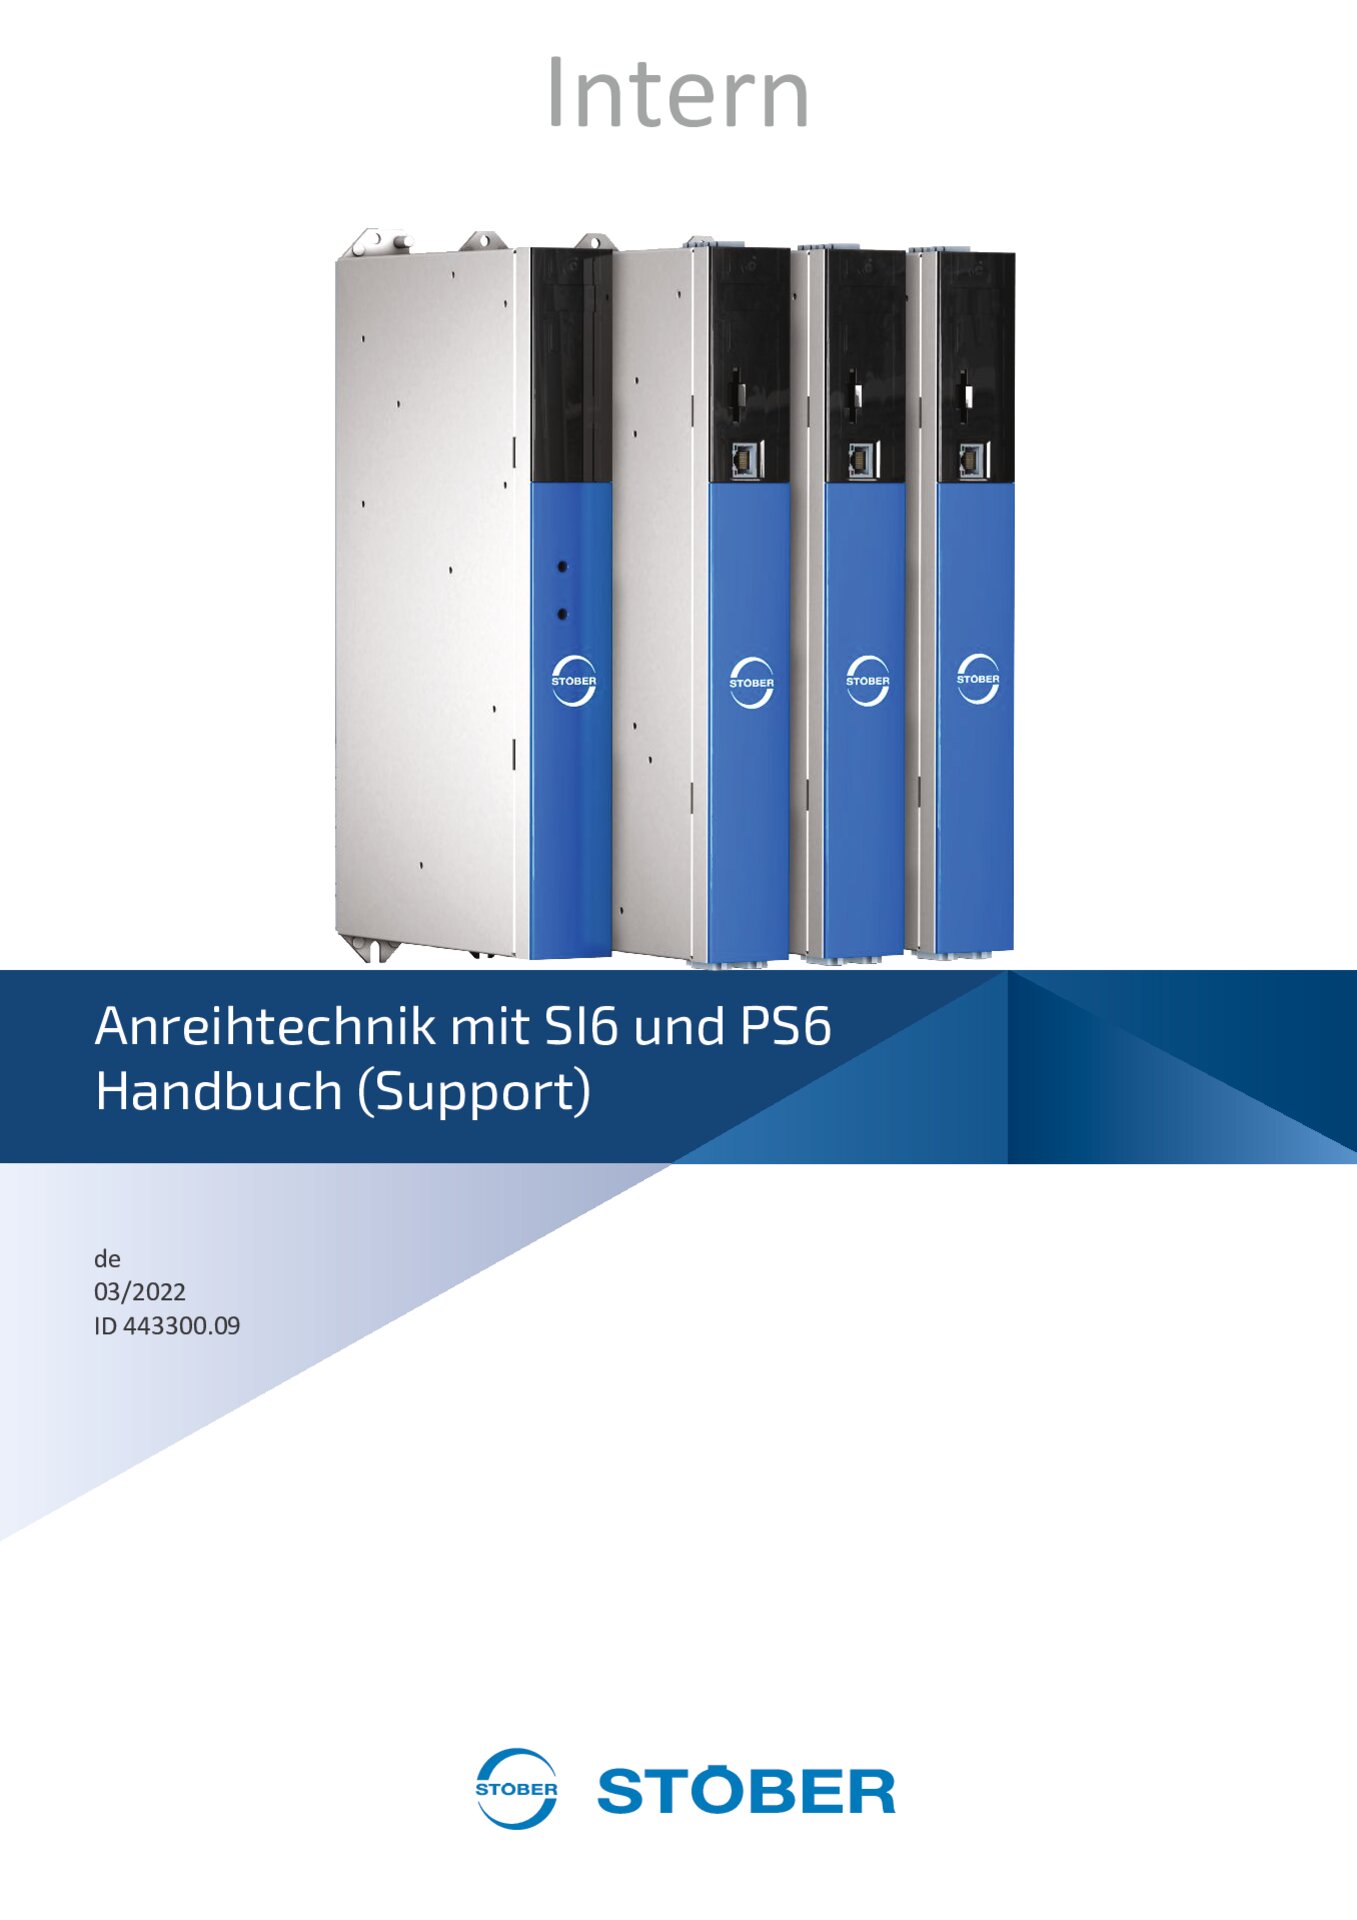 Handbuch SI6 und PS6 - Support